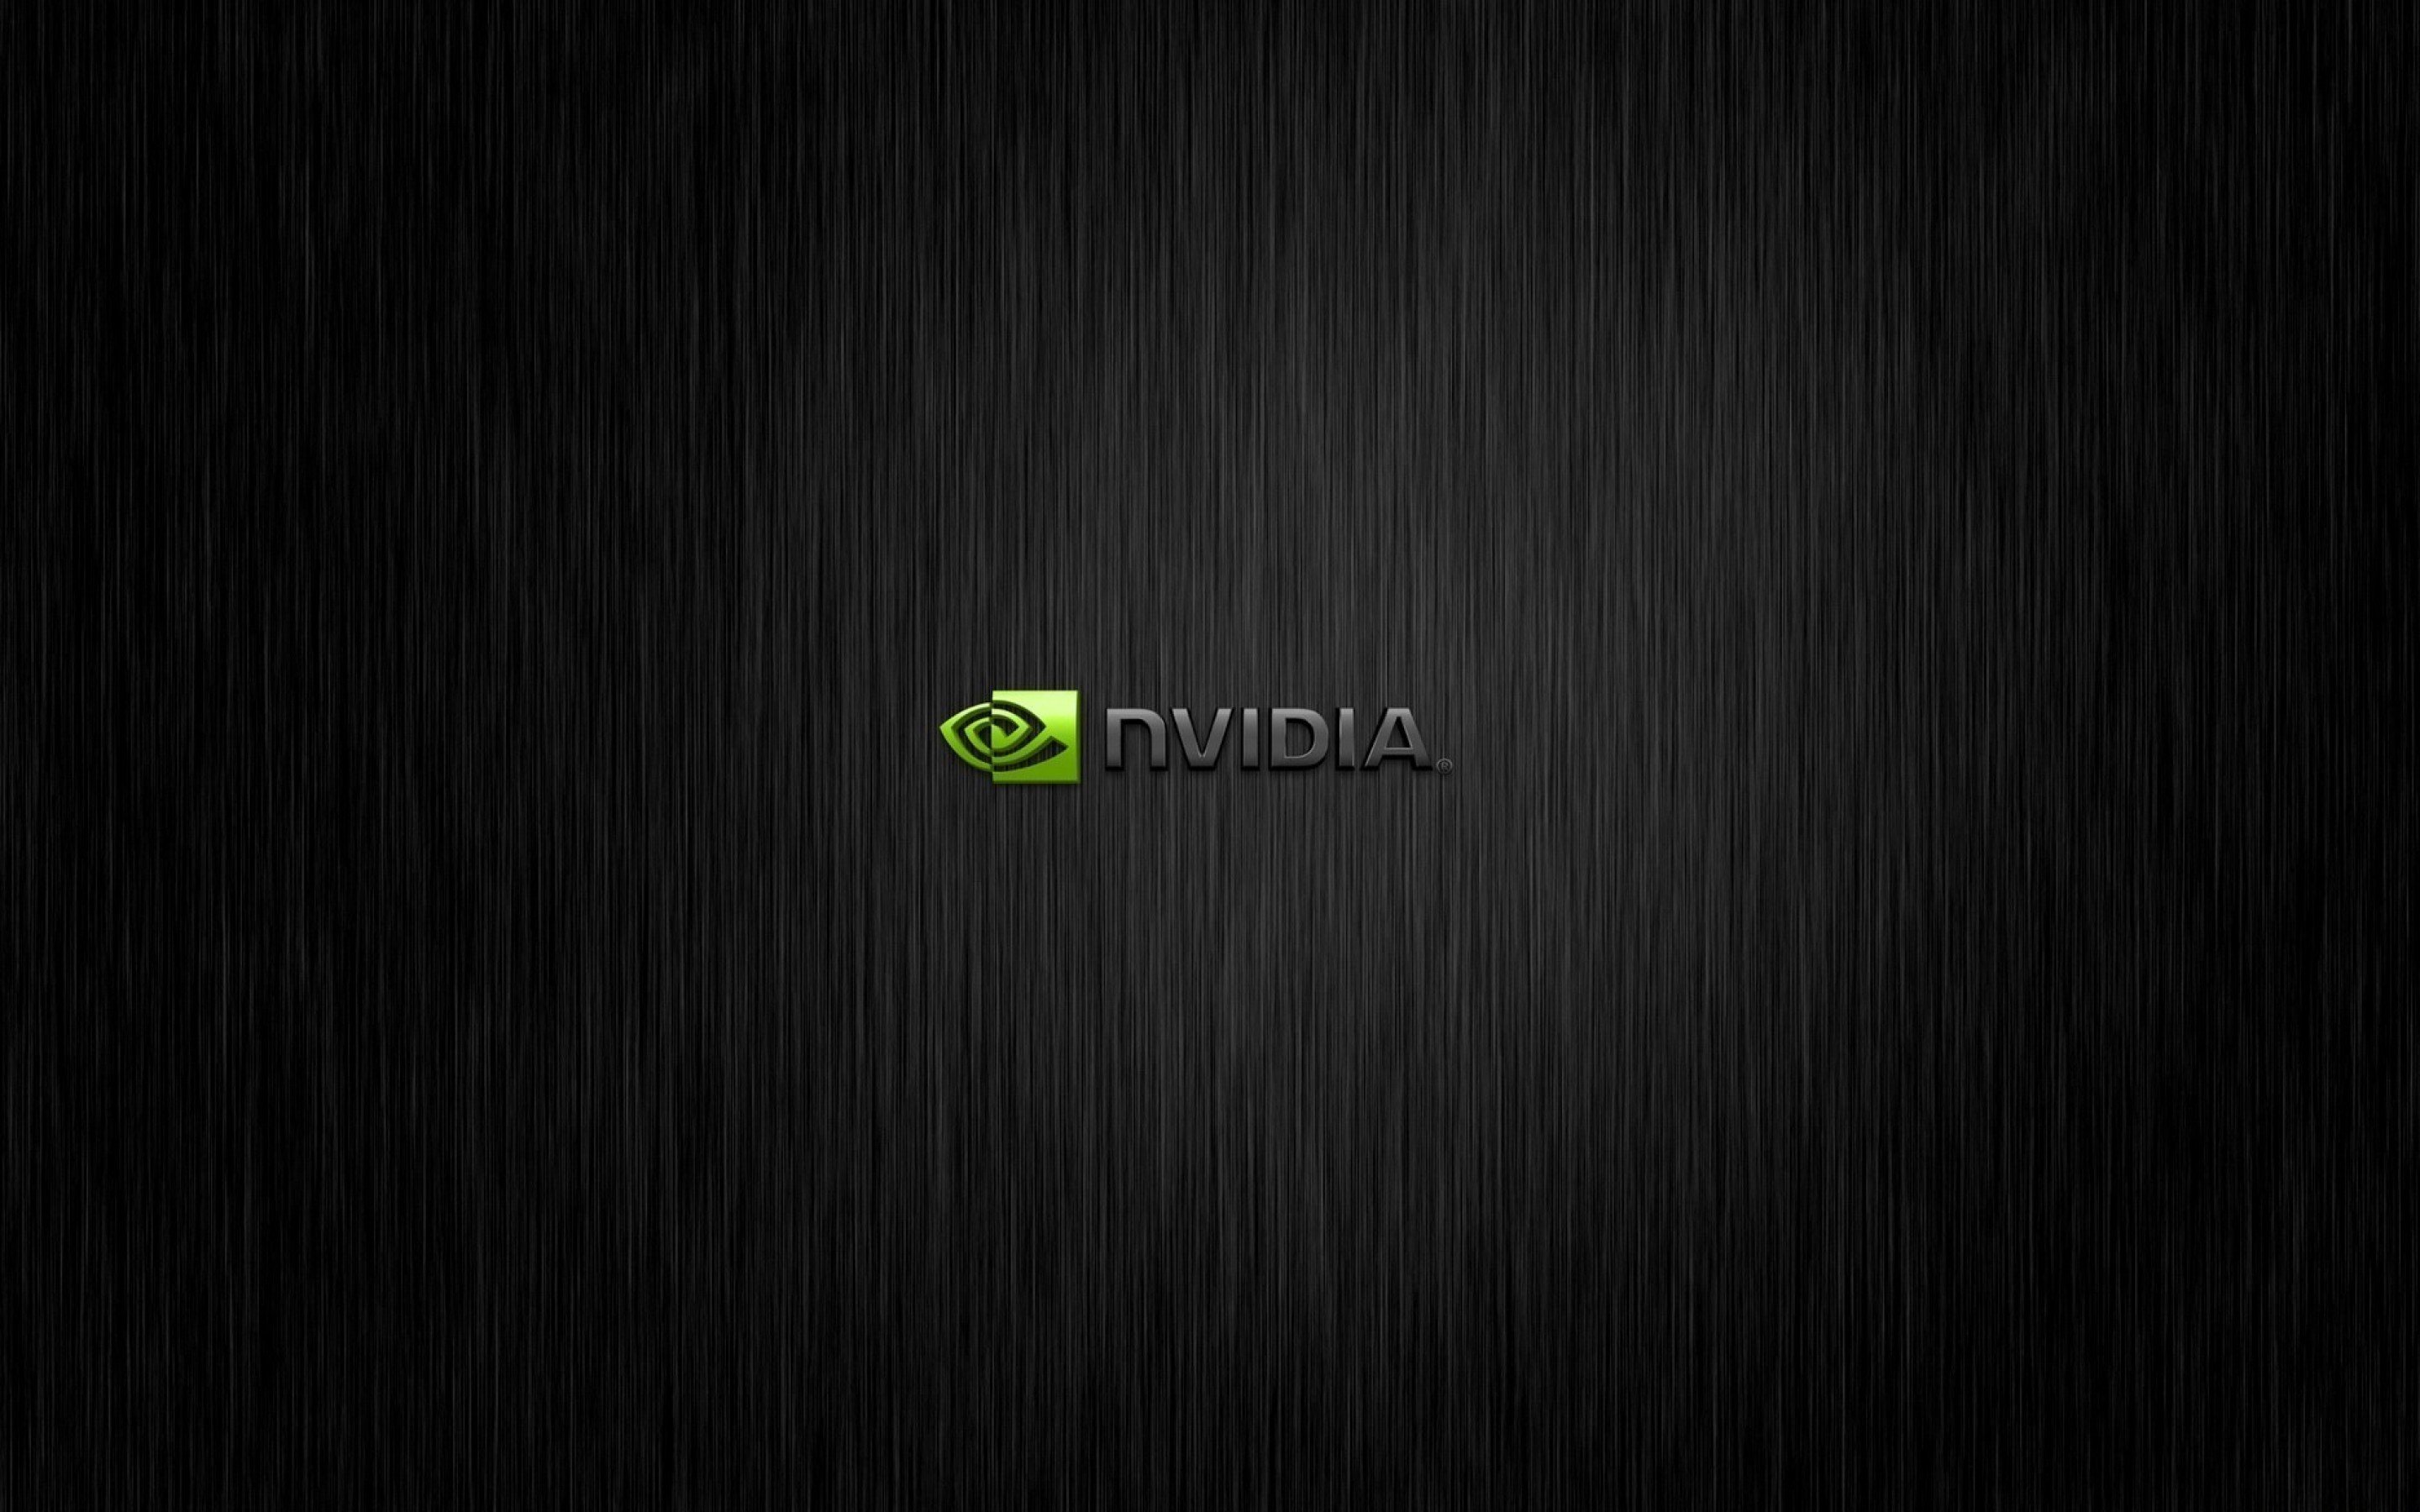 nvidia black wallpaper computers 1800x2880 Wallpaper